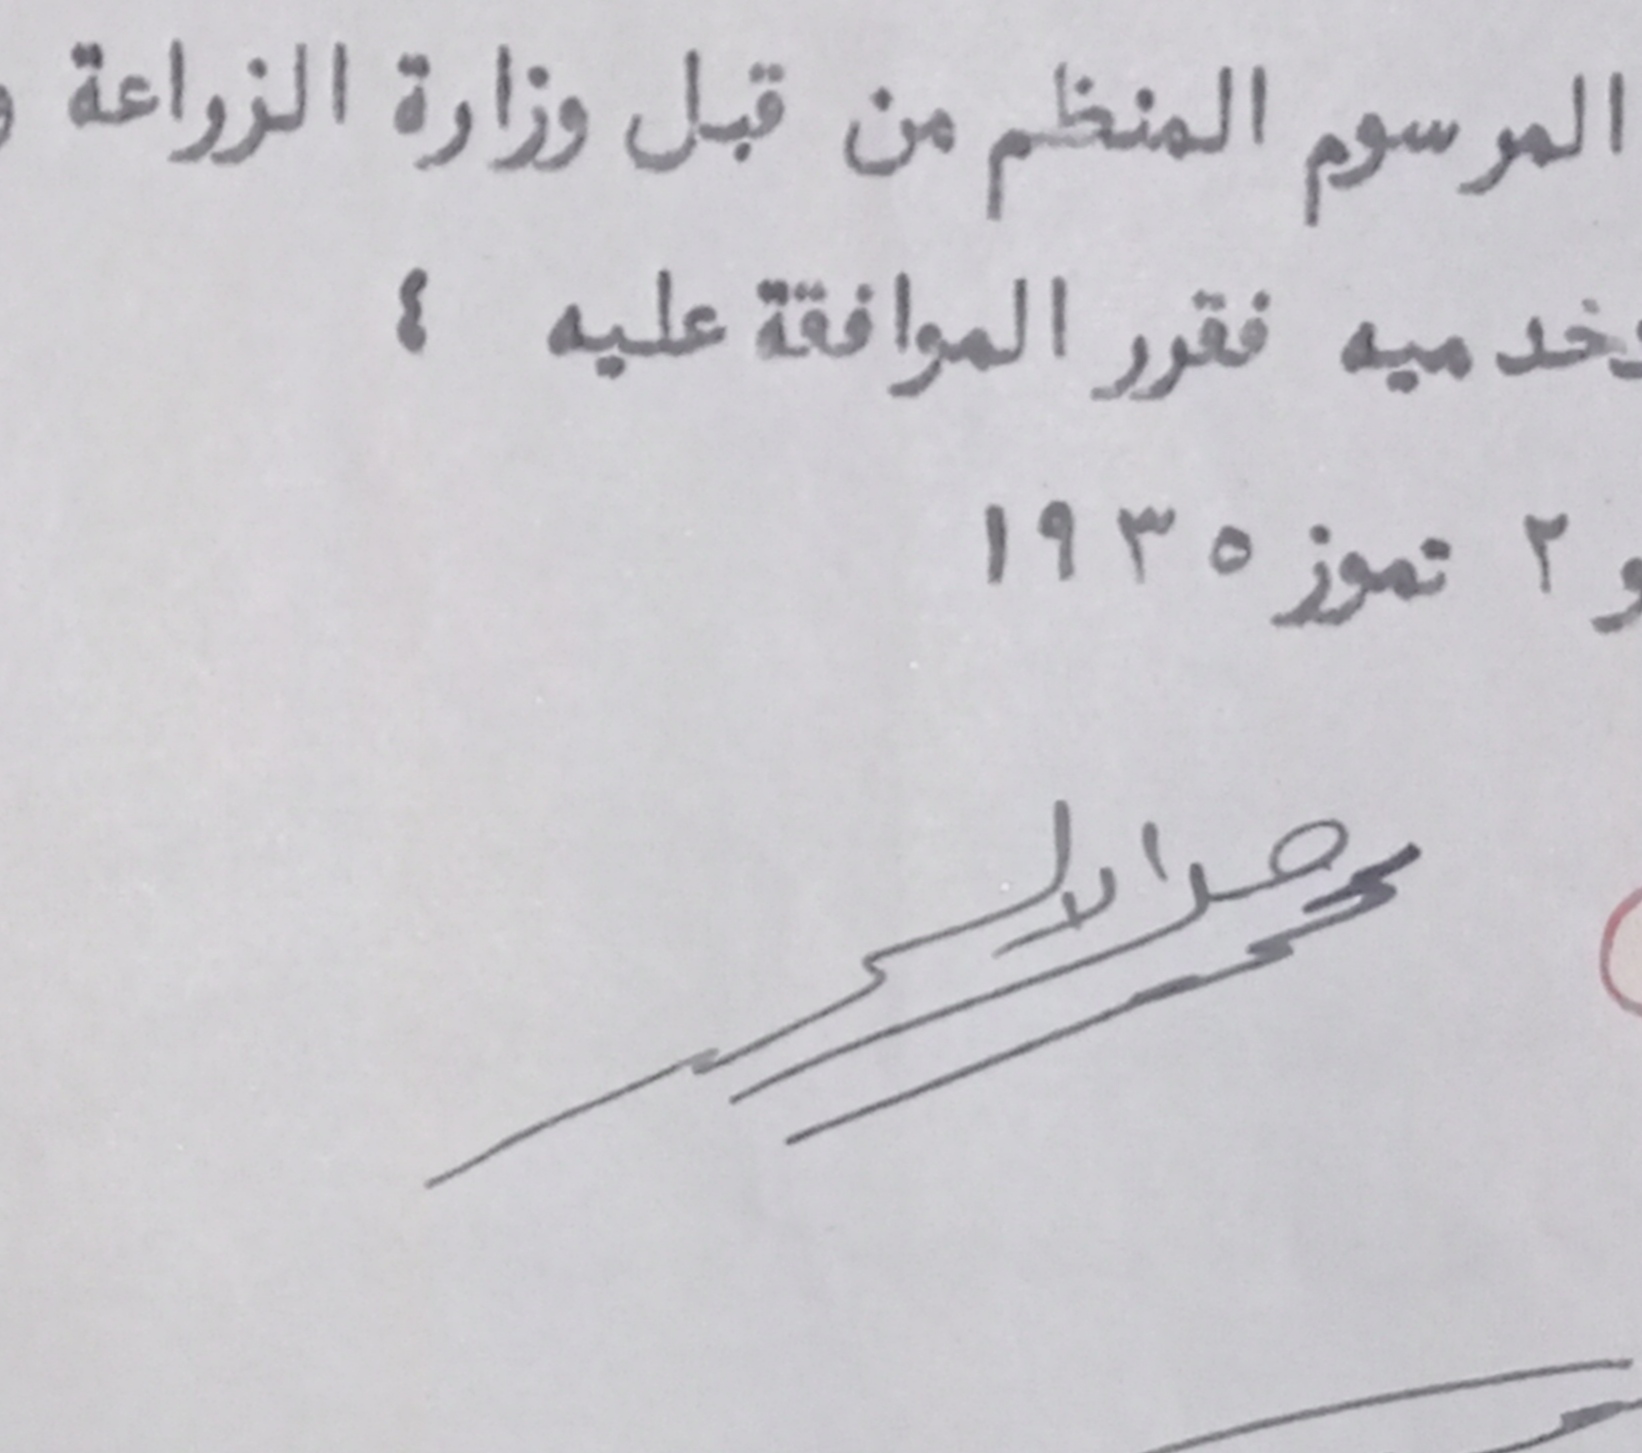 التاريخ السوري المعاصر - توقيع محمد جميل الألشي وزير الأشغال العامة في سورية عام 1935